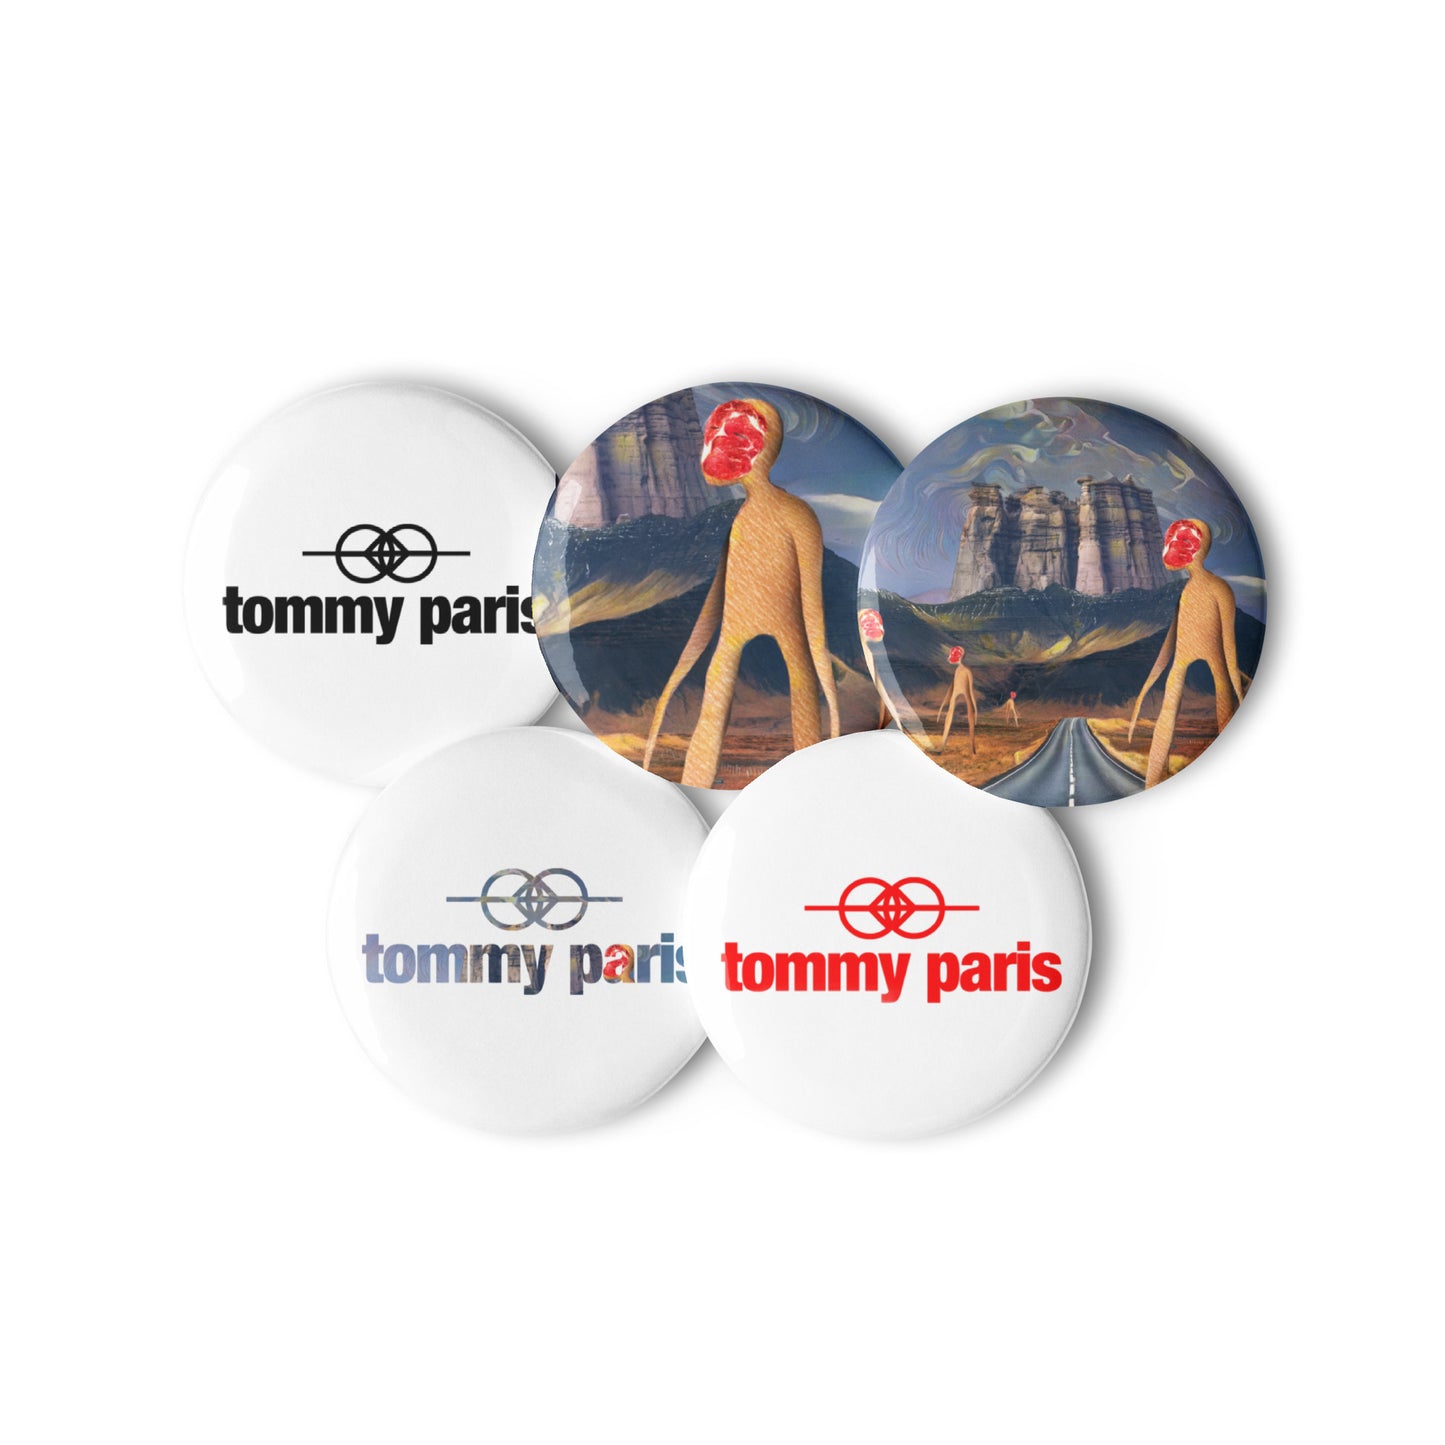 Tommy Paris "erthearz" Album Art and Logo Buttons